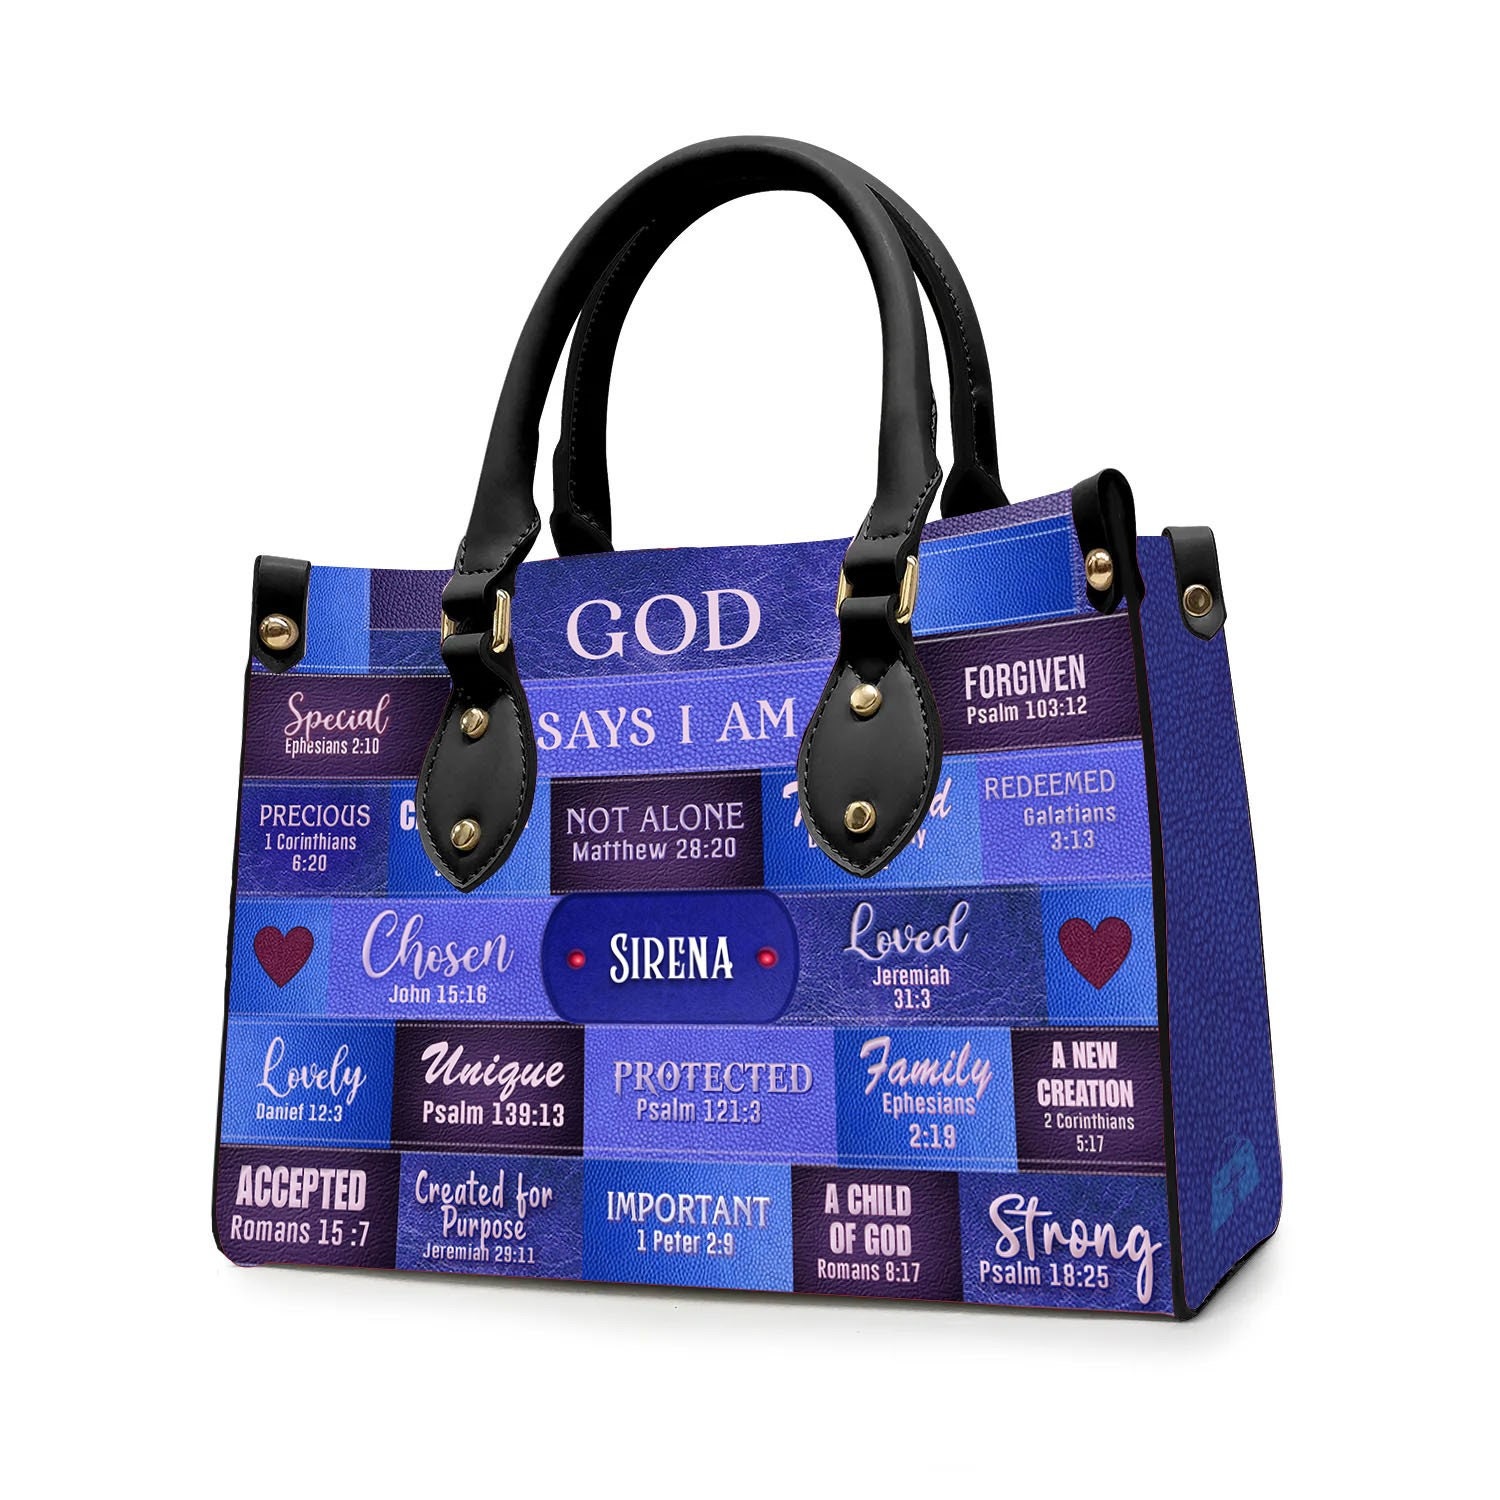 Customizable Luxury Leather Handbag - GOD Says I Am Blue Leather Handbag.